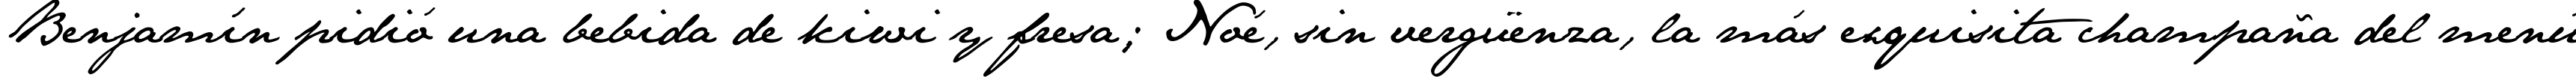 Пример написания шрифтом JaneAusten текста на испанском